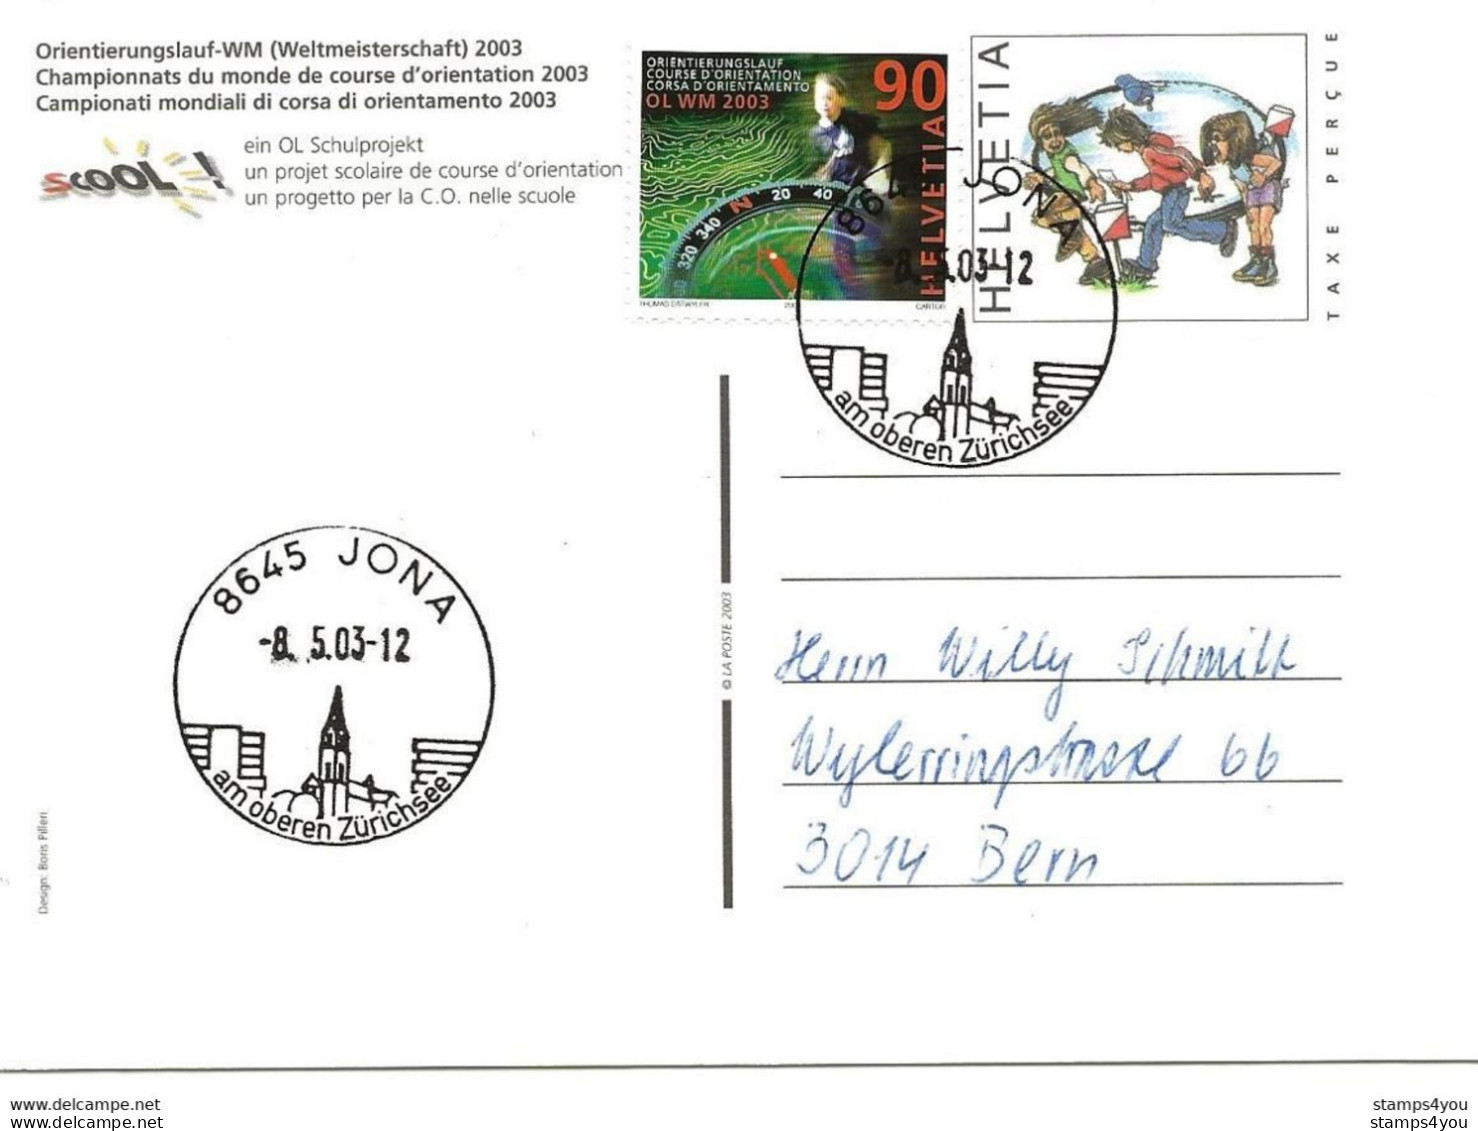 433 - 30 - Entier Postal  "Champ. Monde Course Orientation 2003" Cachets Illustrés Jona 2003 - Atletismo